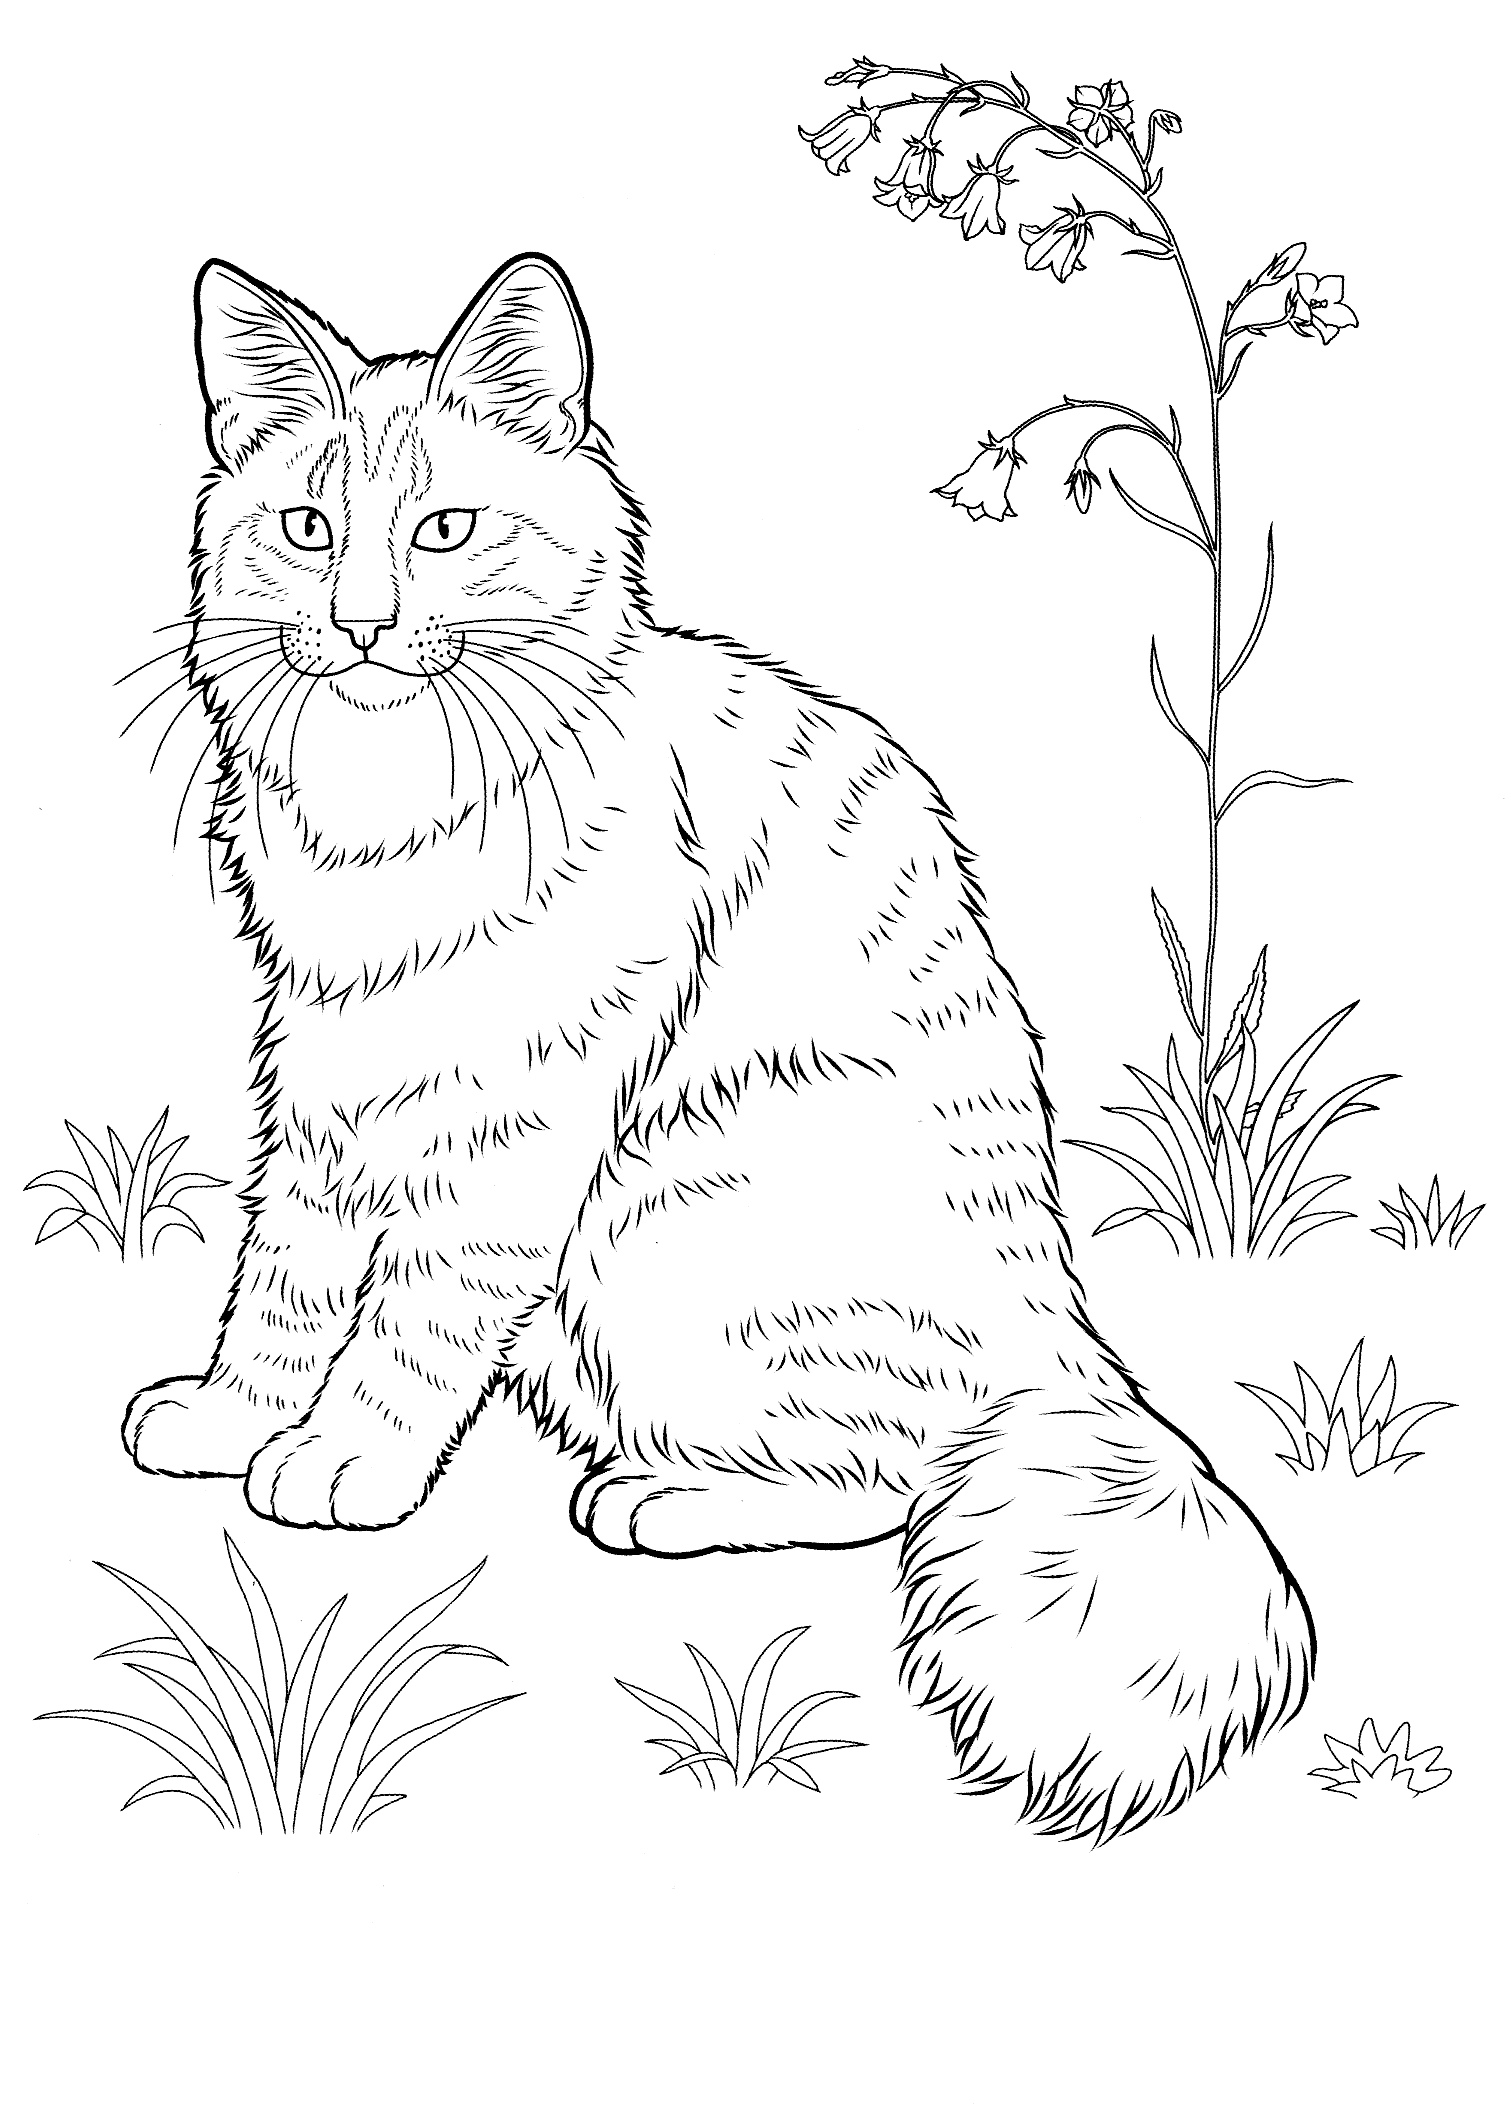 planse desene de colorat pisica